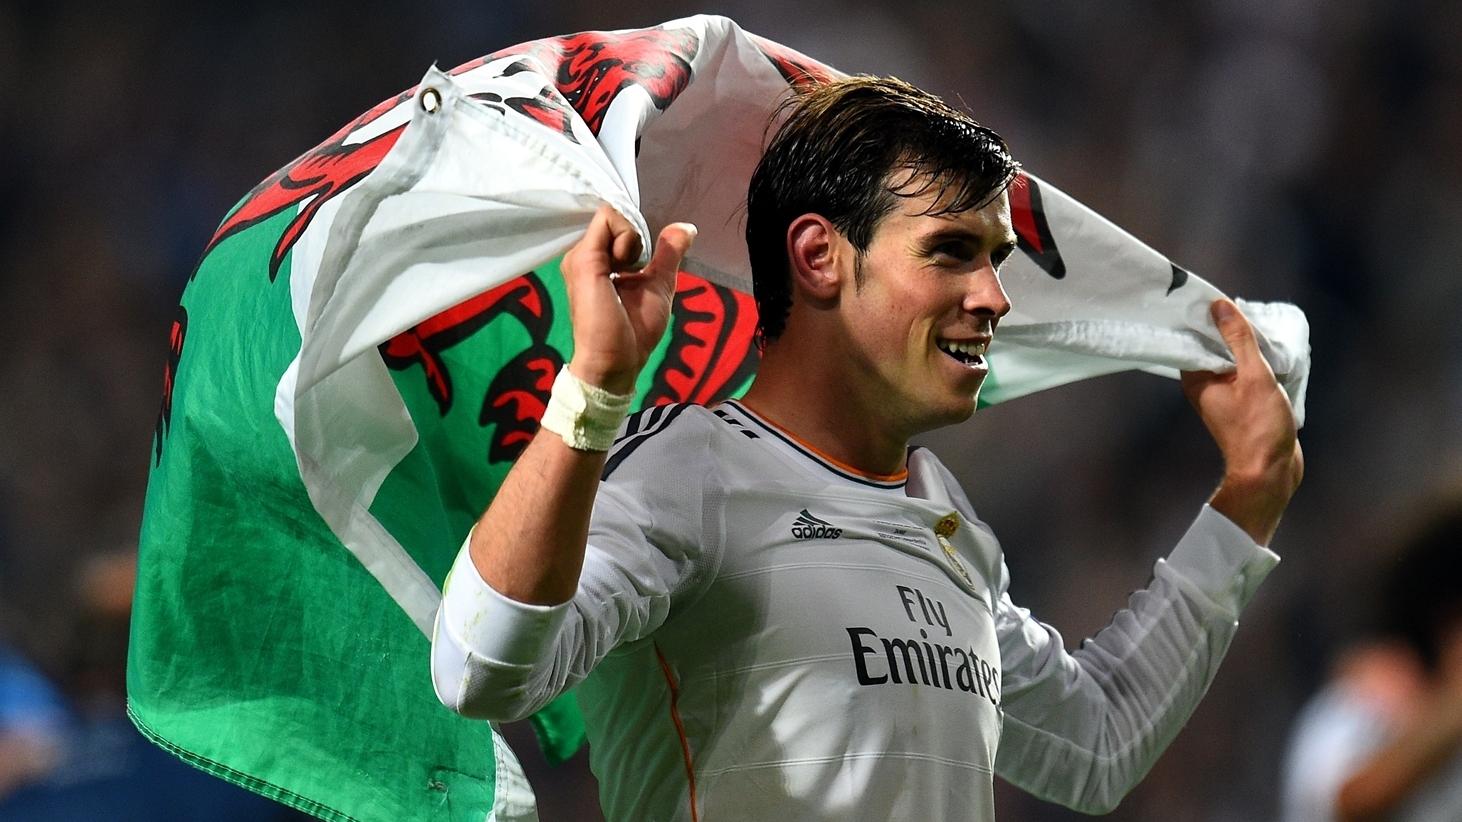 Gareth Bale là một huyền thoại của xứ Wales và được coi là một trong những cầu thủ tấn công hay nhất thế giới. Với tốc độ, kỹ thuật và khả năng ghi bàn tuyệt vời, anh là niềm tự hào của cả đất nước Wales. Xem hình ảnh liên quan để chiêm ngưỡng tài năng và thành tích đáng kinh ngạc của Gareth Bale.